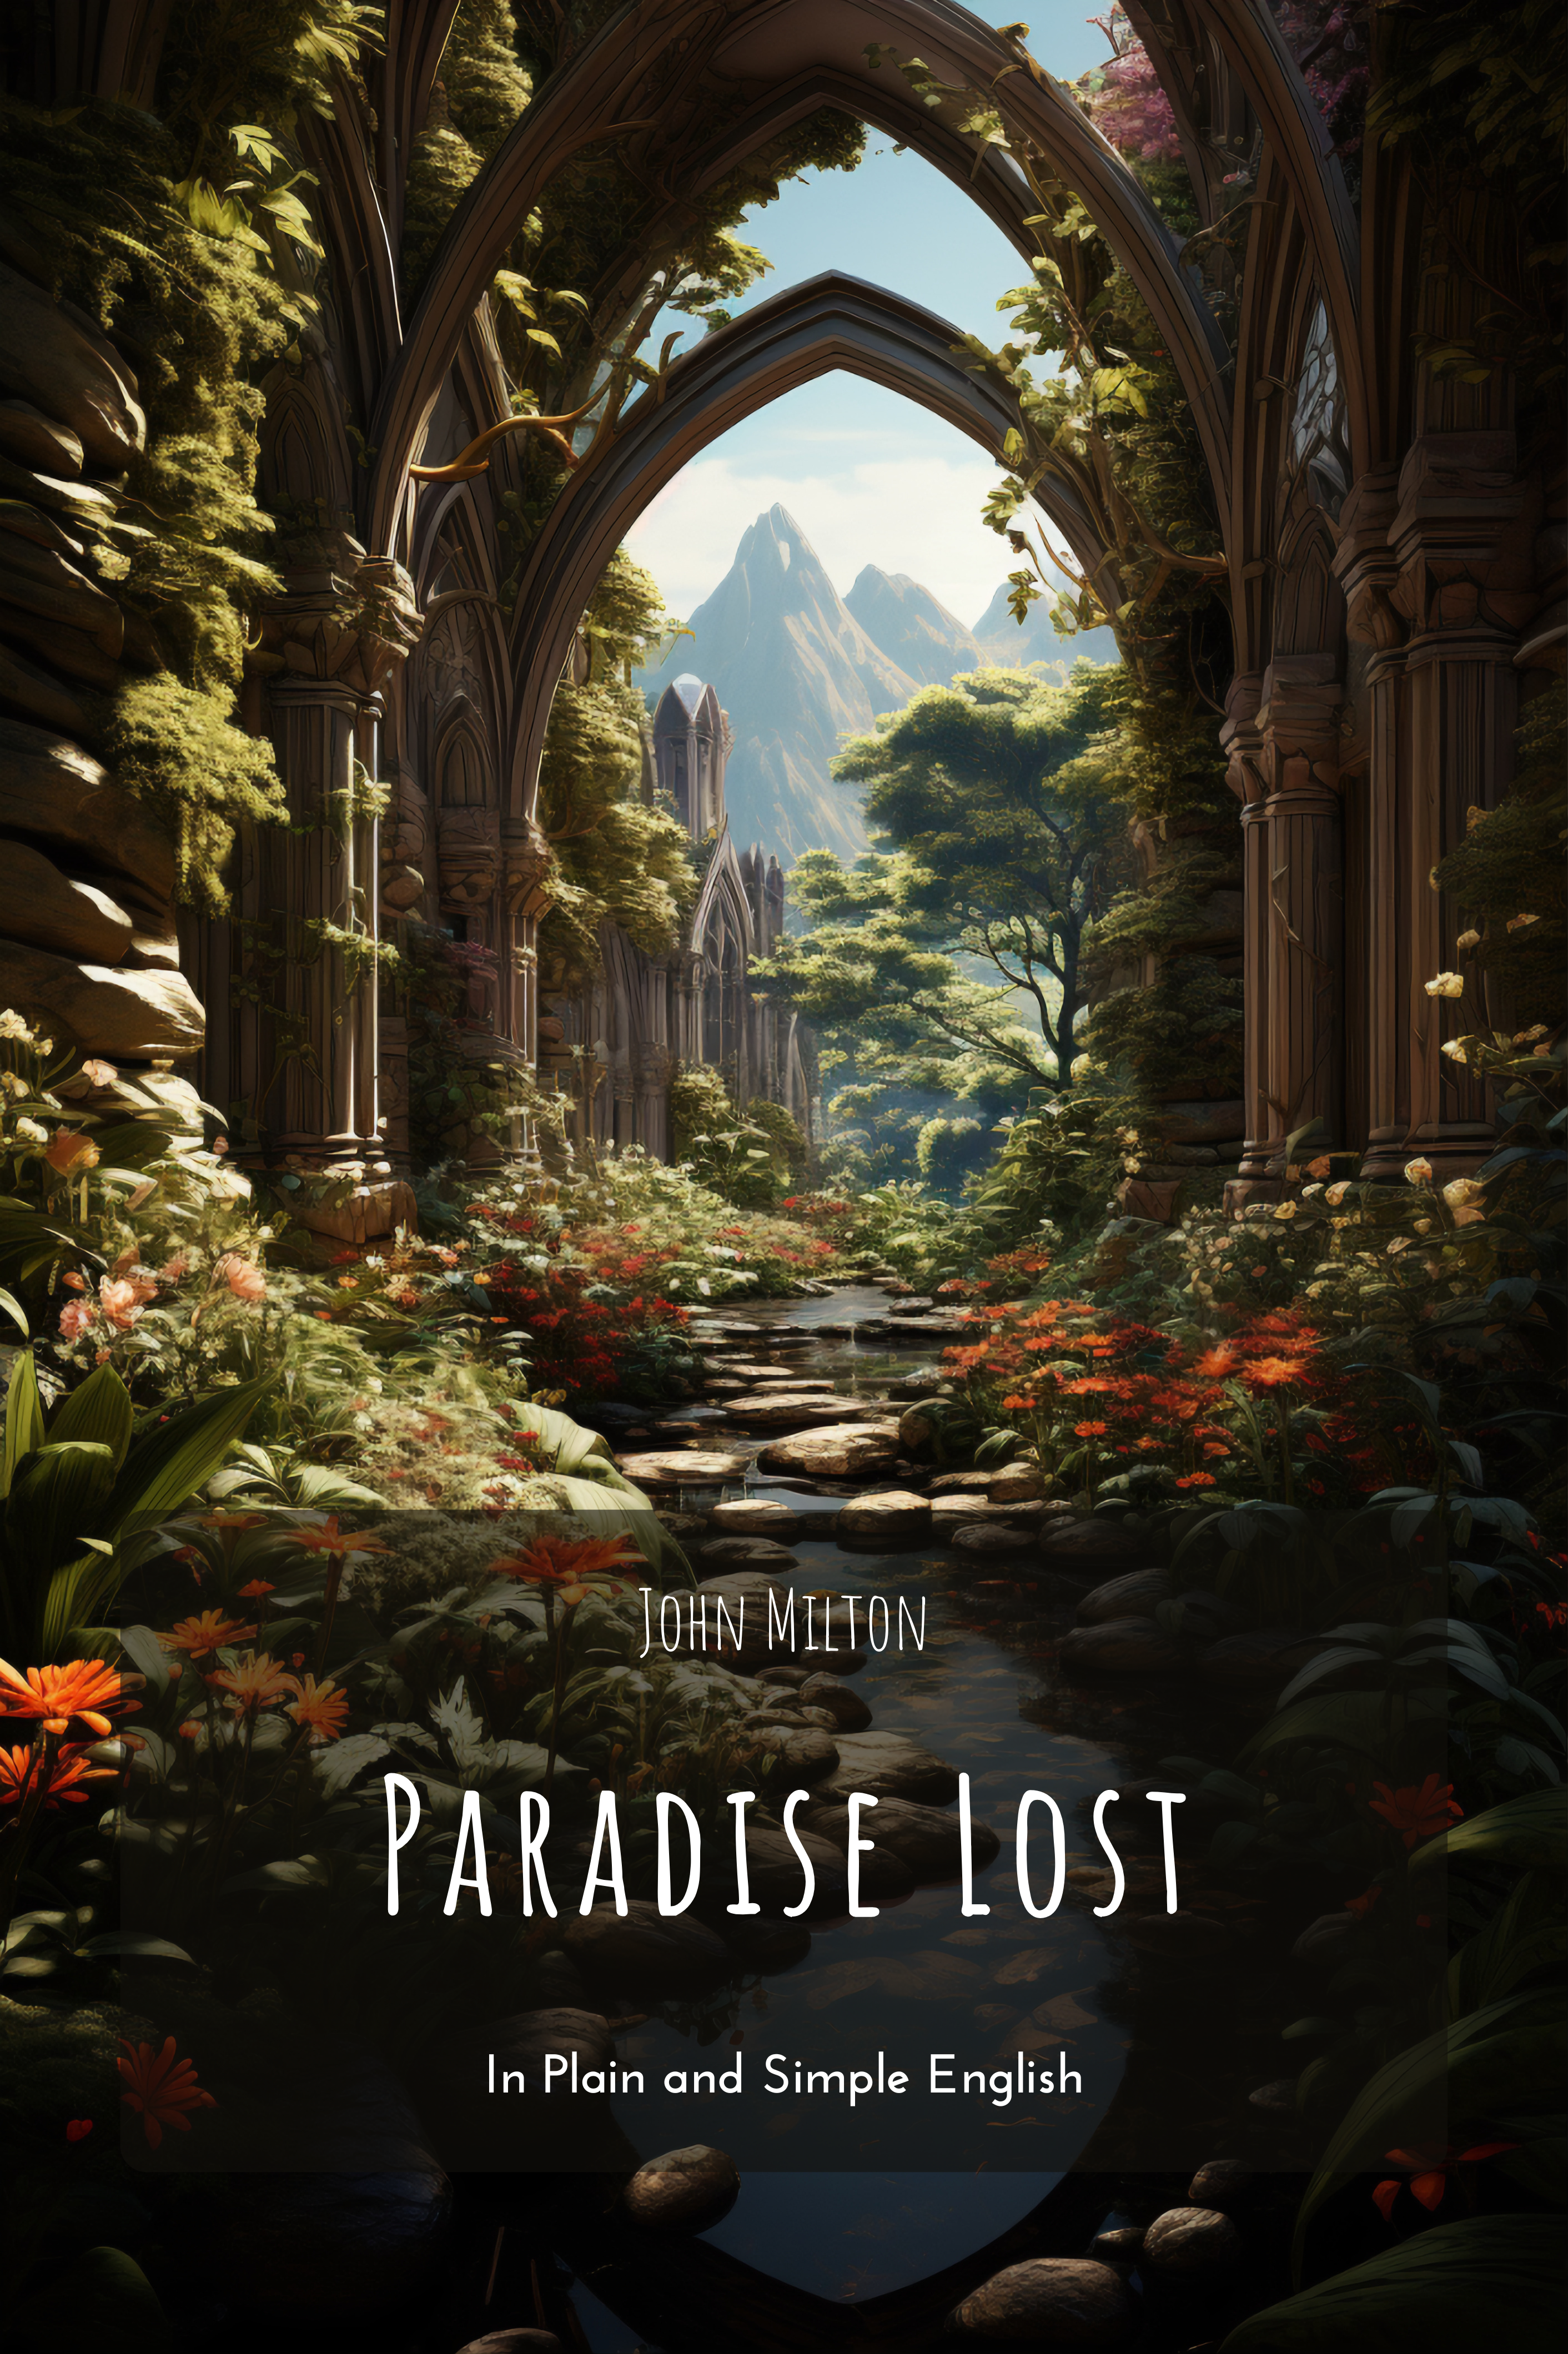 John Milton's Paradise Lost In Plain English (English Edition) - eBooks em  Inglês na